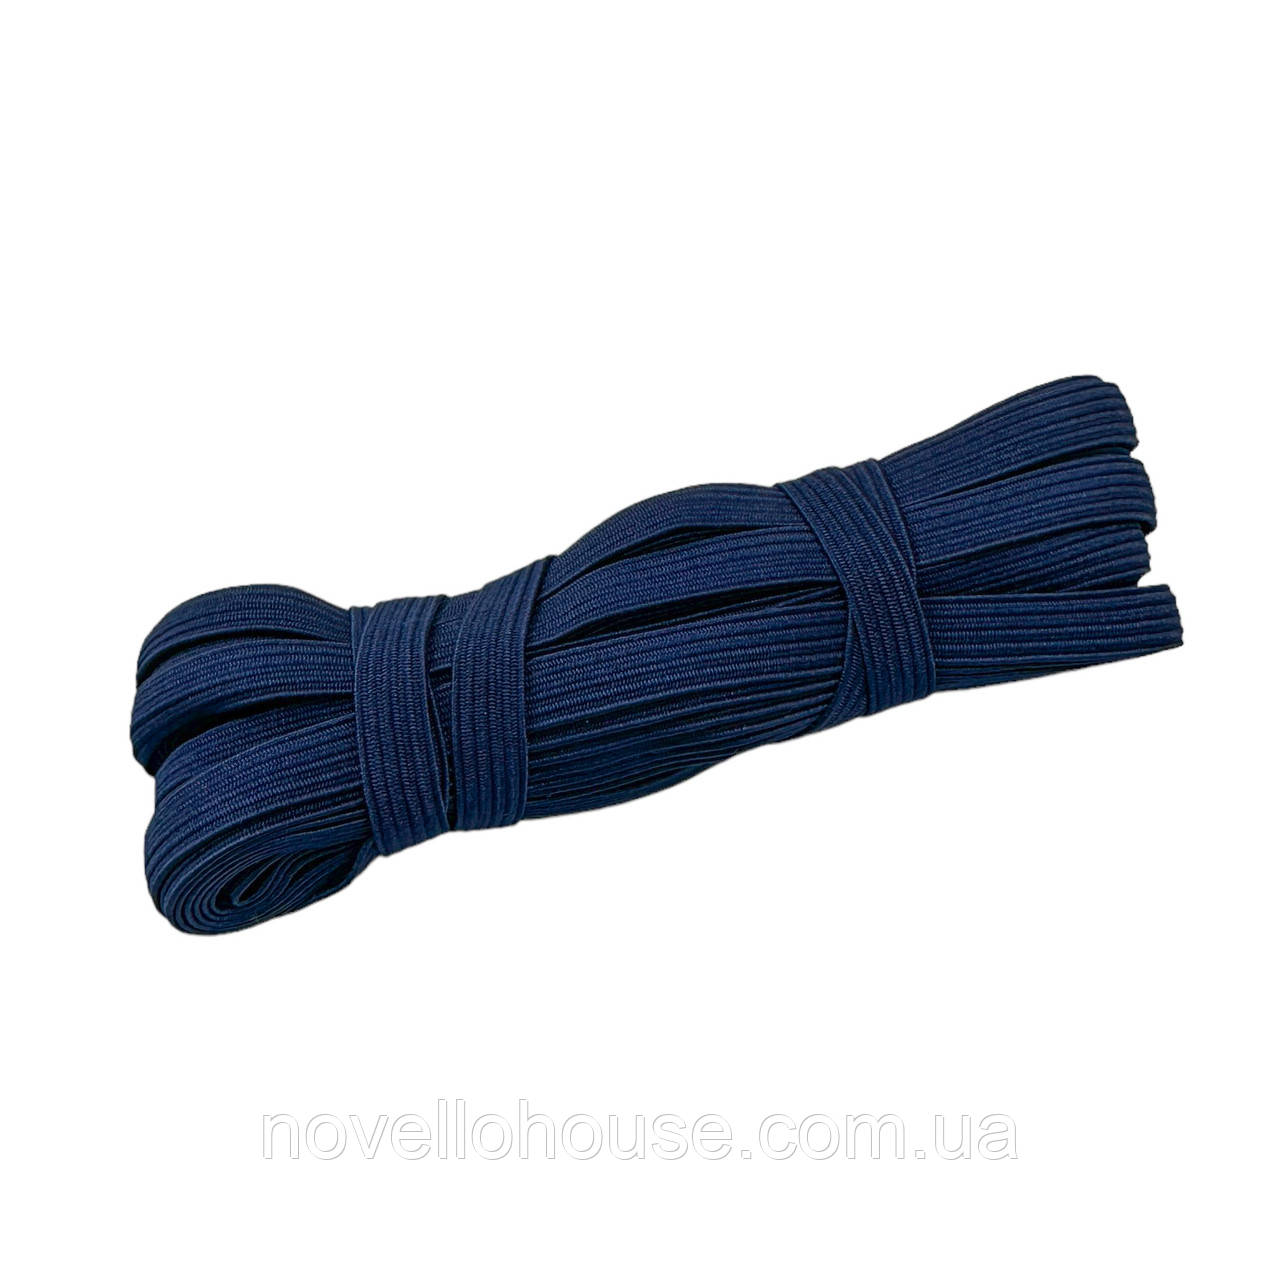 Резинка (гумка) білизняна, темно-синя, 10 мм. 9-10 метрів, Резинка для шиття плоска.